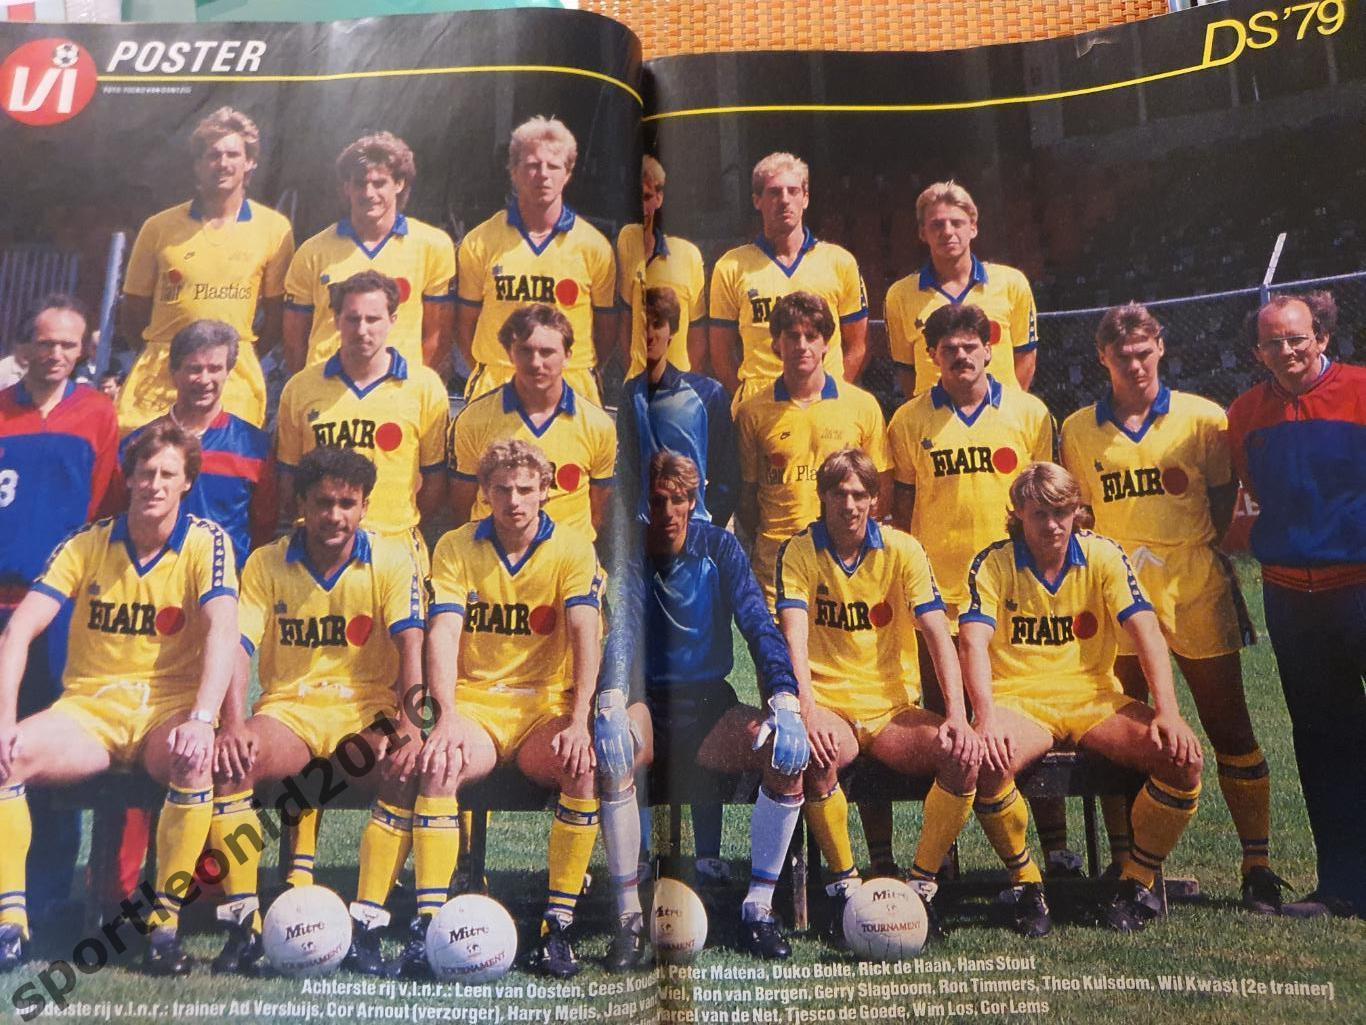 Voetbal International 1985 года выпуска.14 журналов.1 7